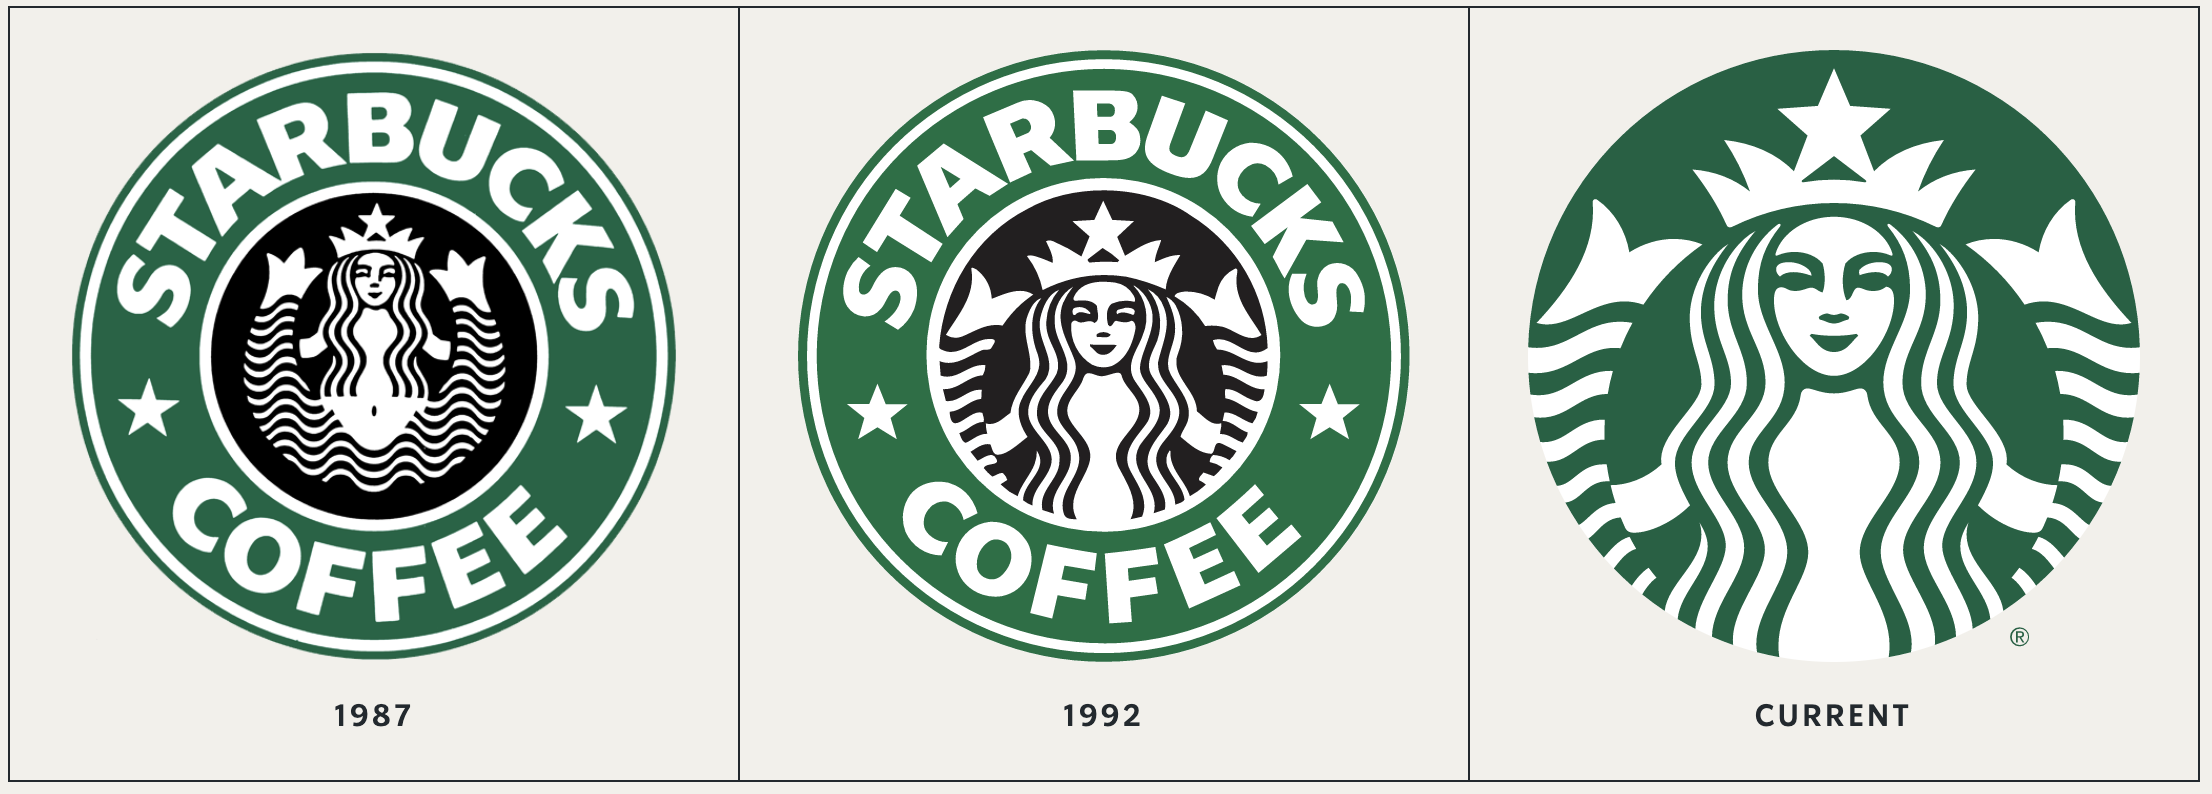 Starbucks Brand Identity Logo Evolution